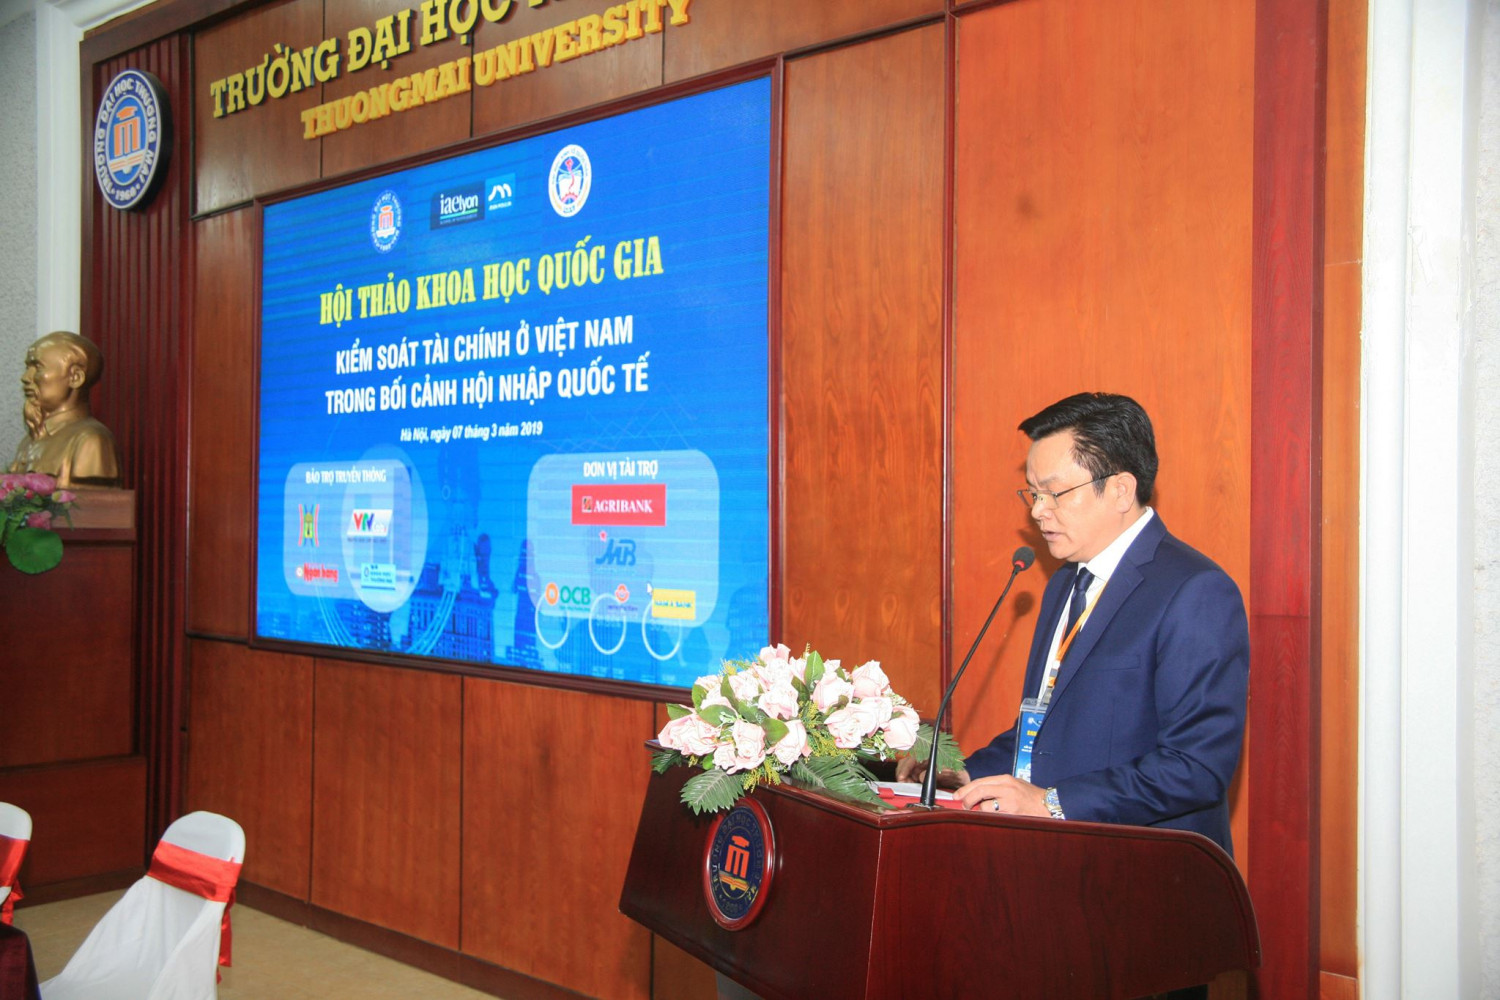 Hội thảo khoa học quốc gia "Kiểm soát tài chính ở Việt Nam trong bối cảnh hội nhập quốc tế"